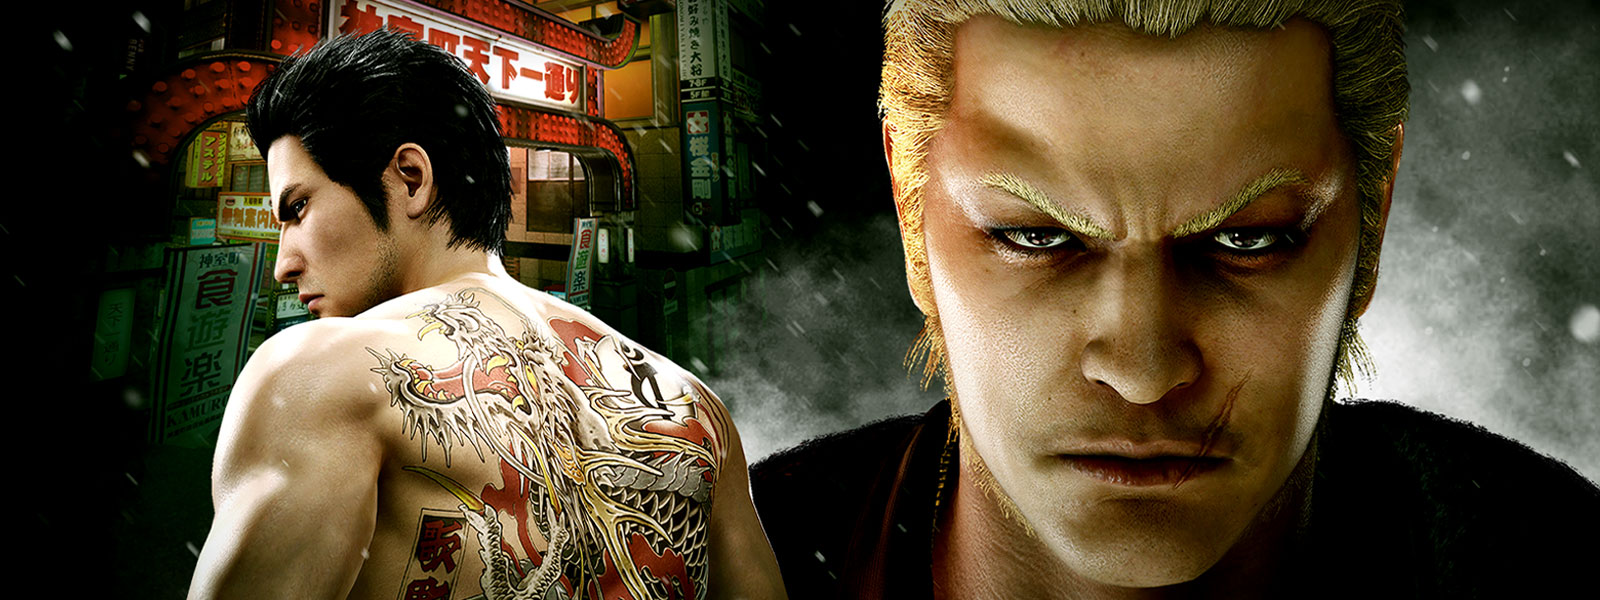 Zwei Yakuza-Charaktere sind beui Nacht in einer düsteren Stadt zu sehen.